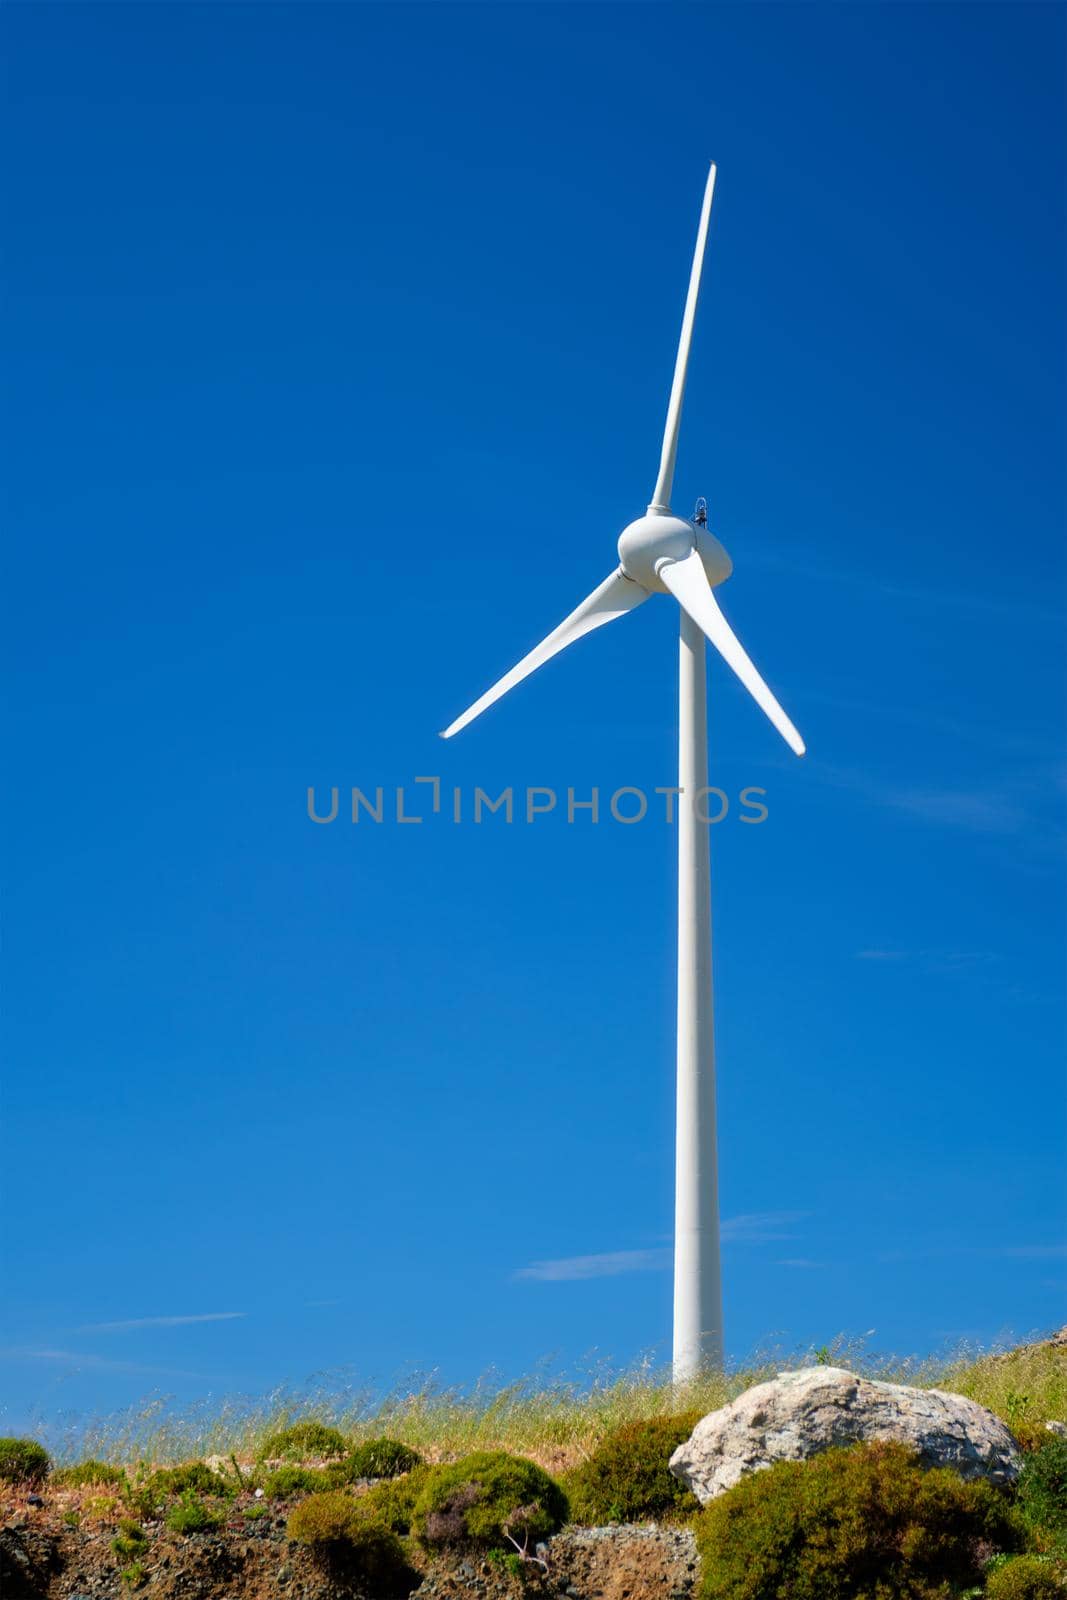 Wind generator turbines in sky by dimol